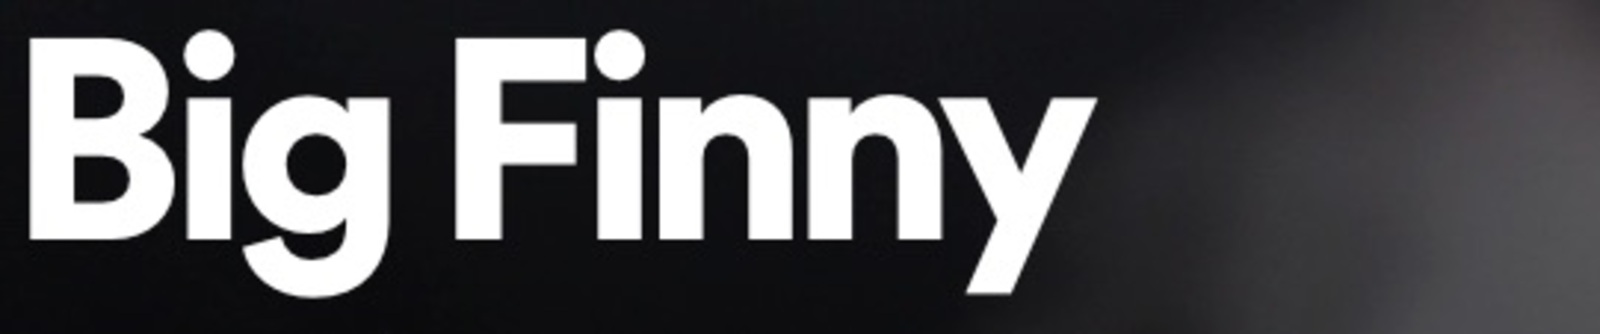 Big Finny Spotify